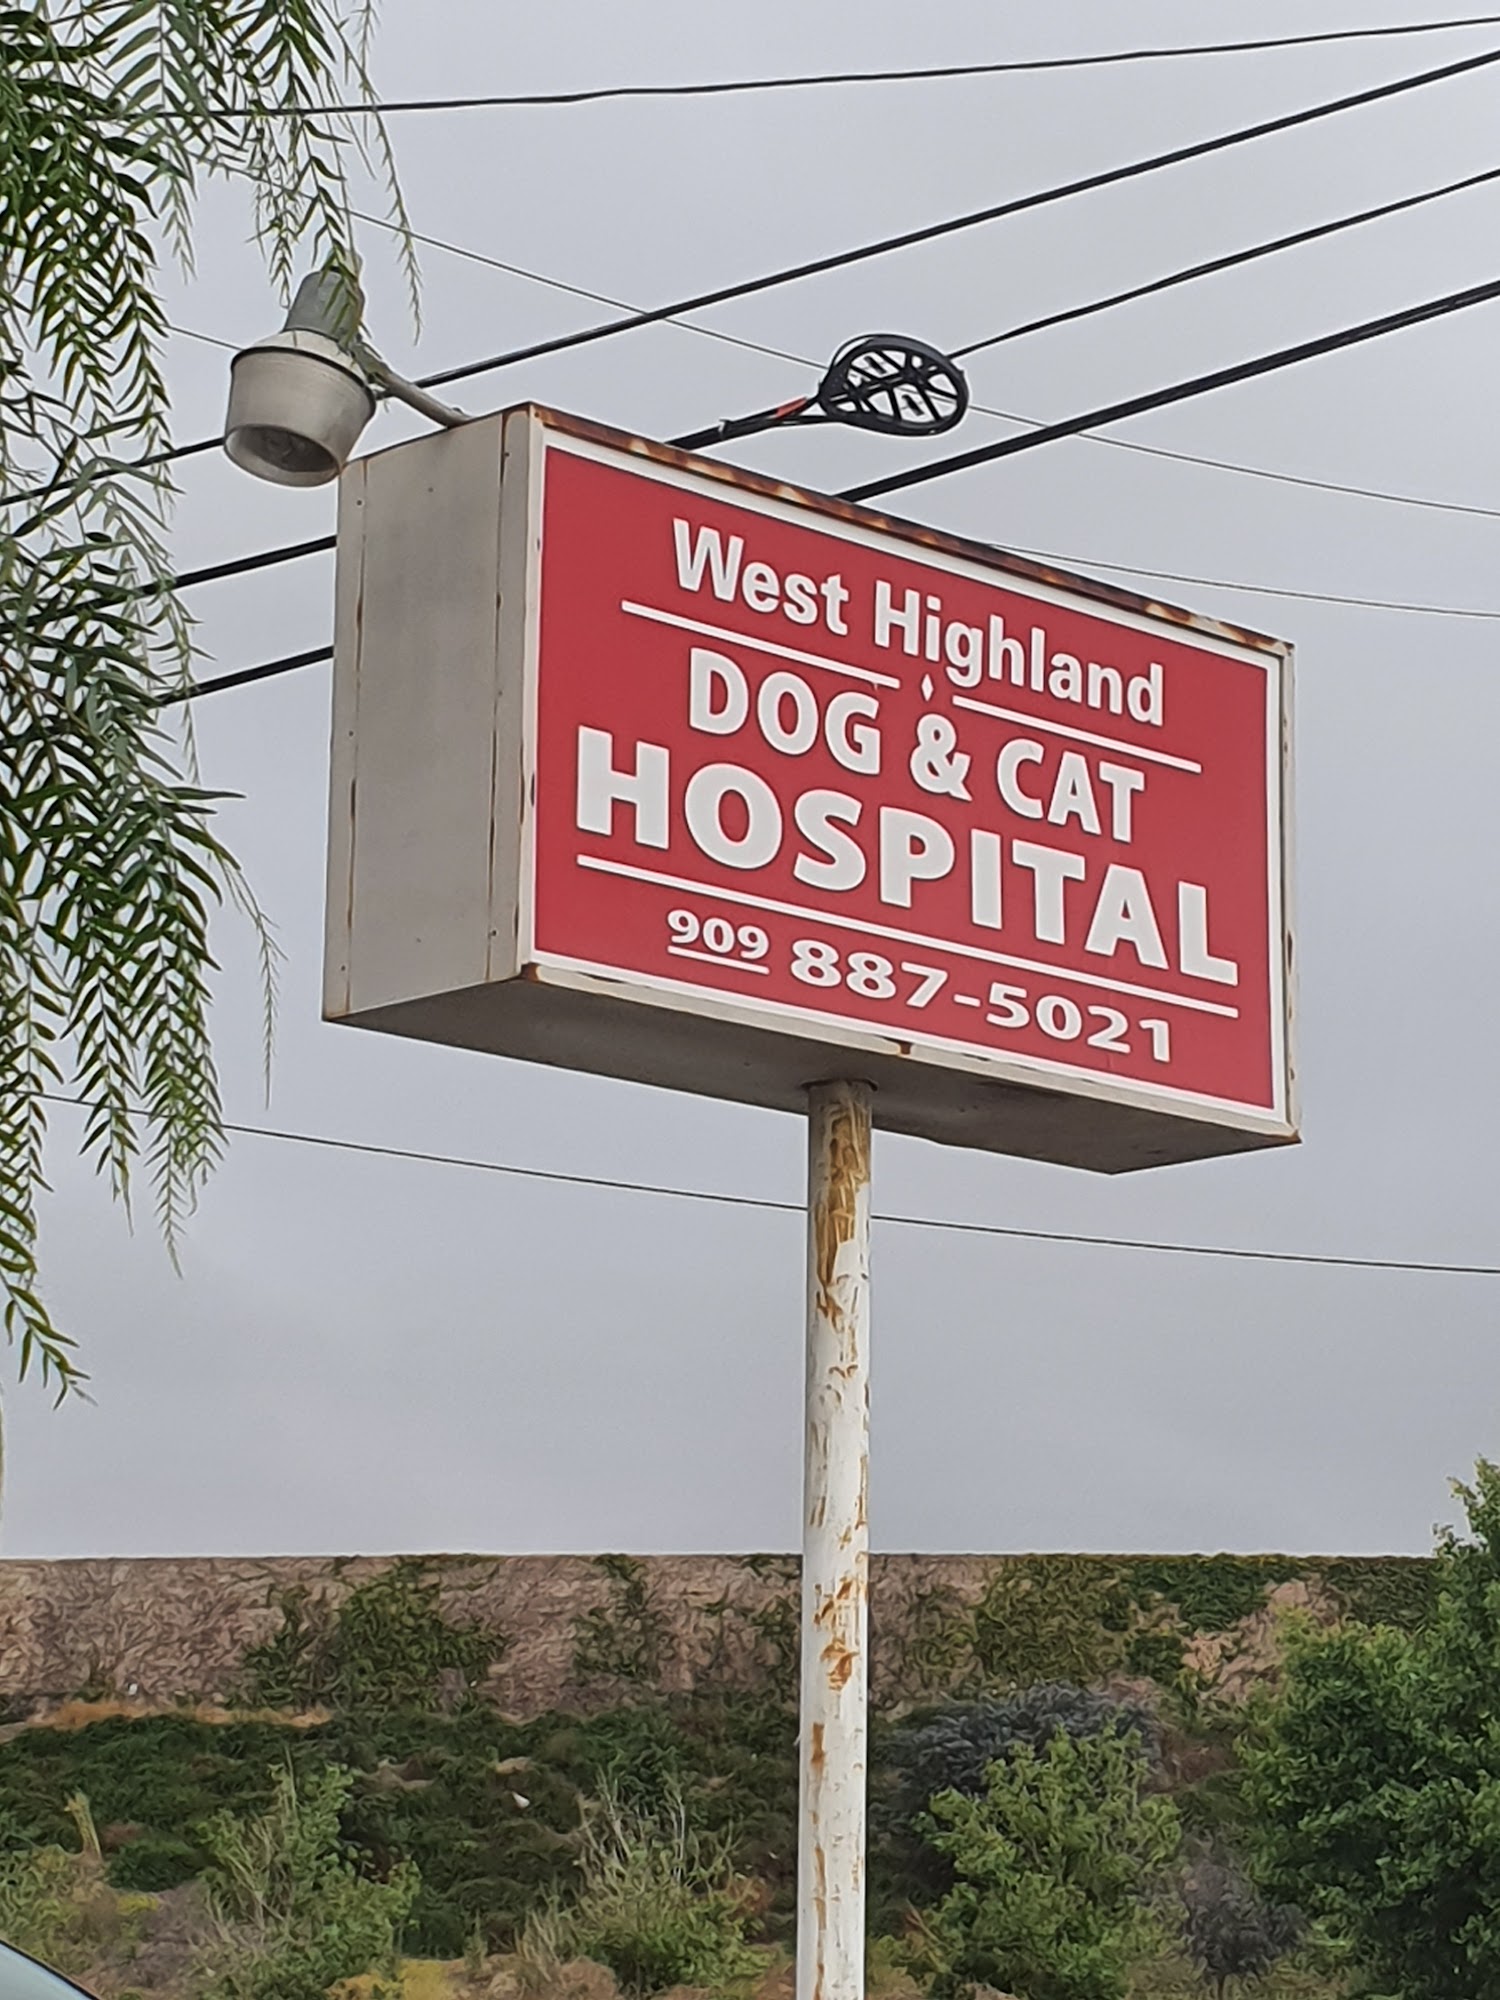 West Highland Dog & Cat Hospital